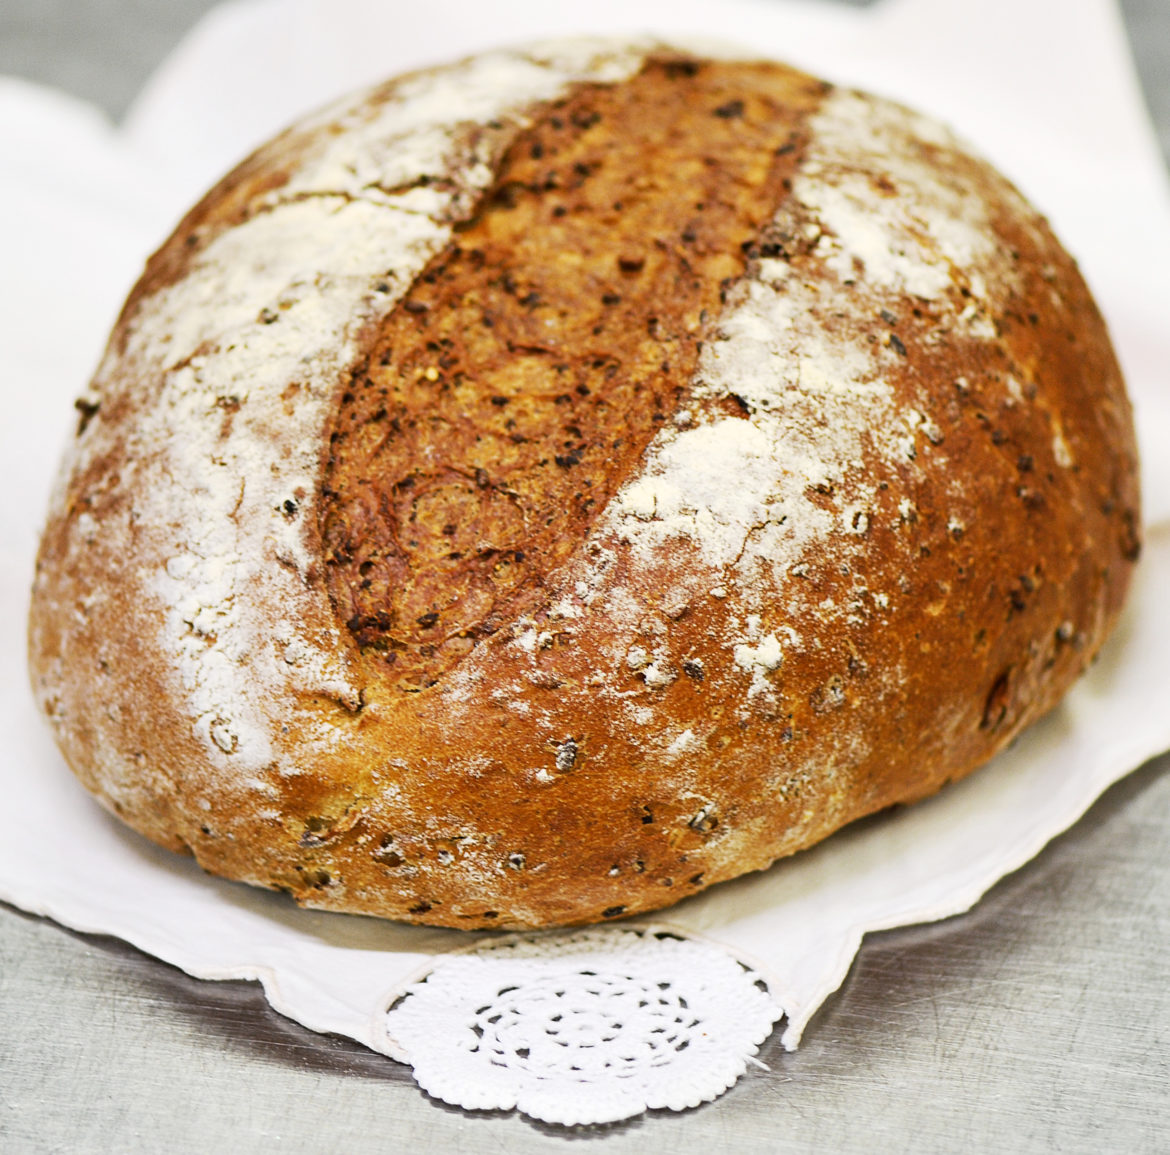 Dalle farine alternative alle bacche di goji, le novità dei creativi del pane